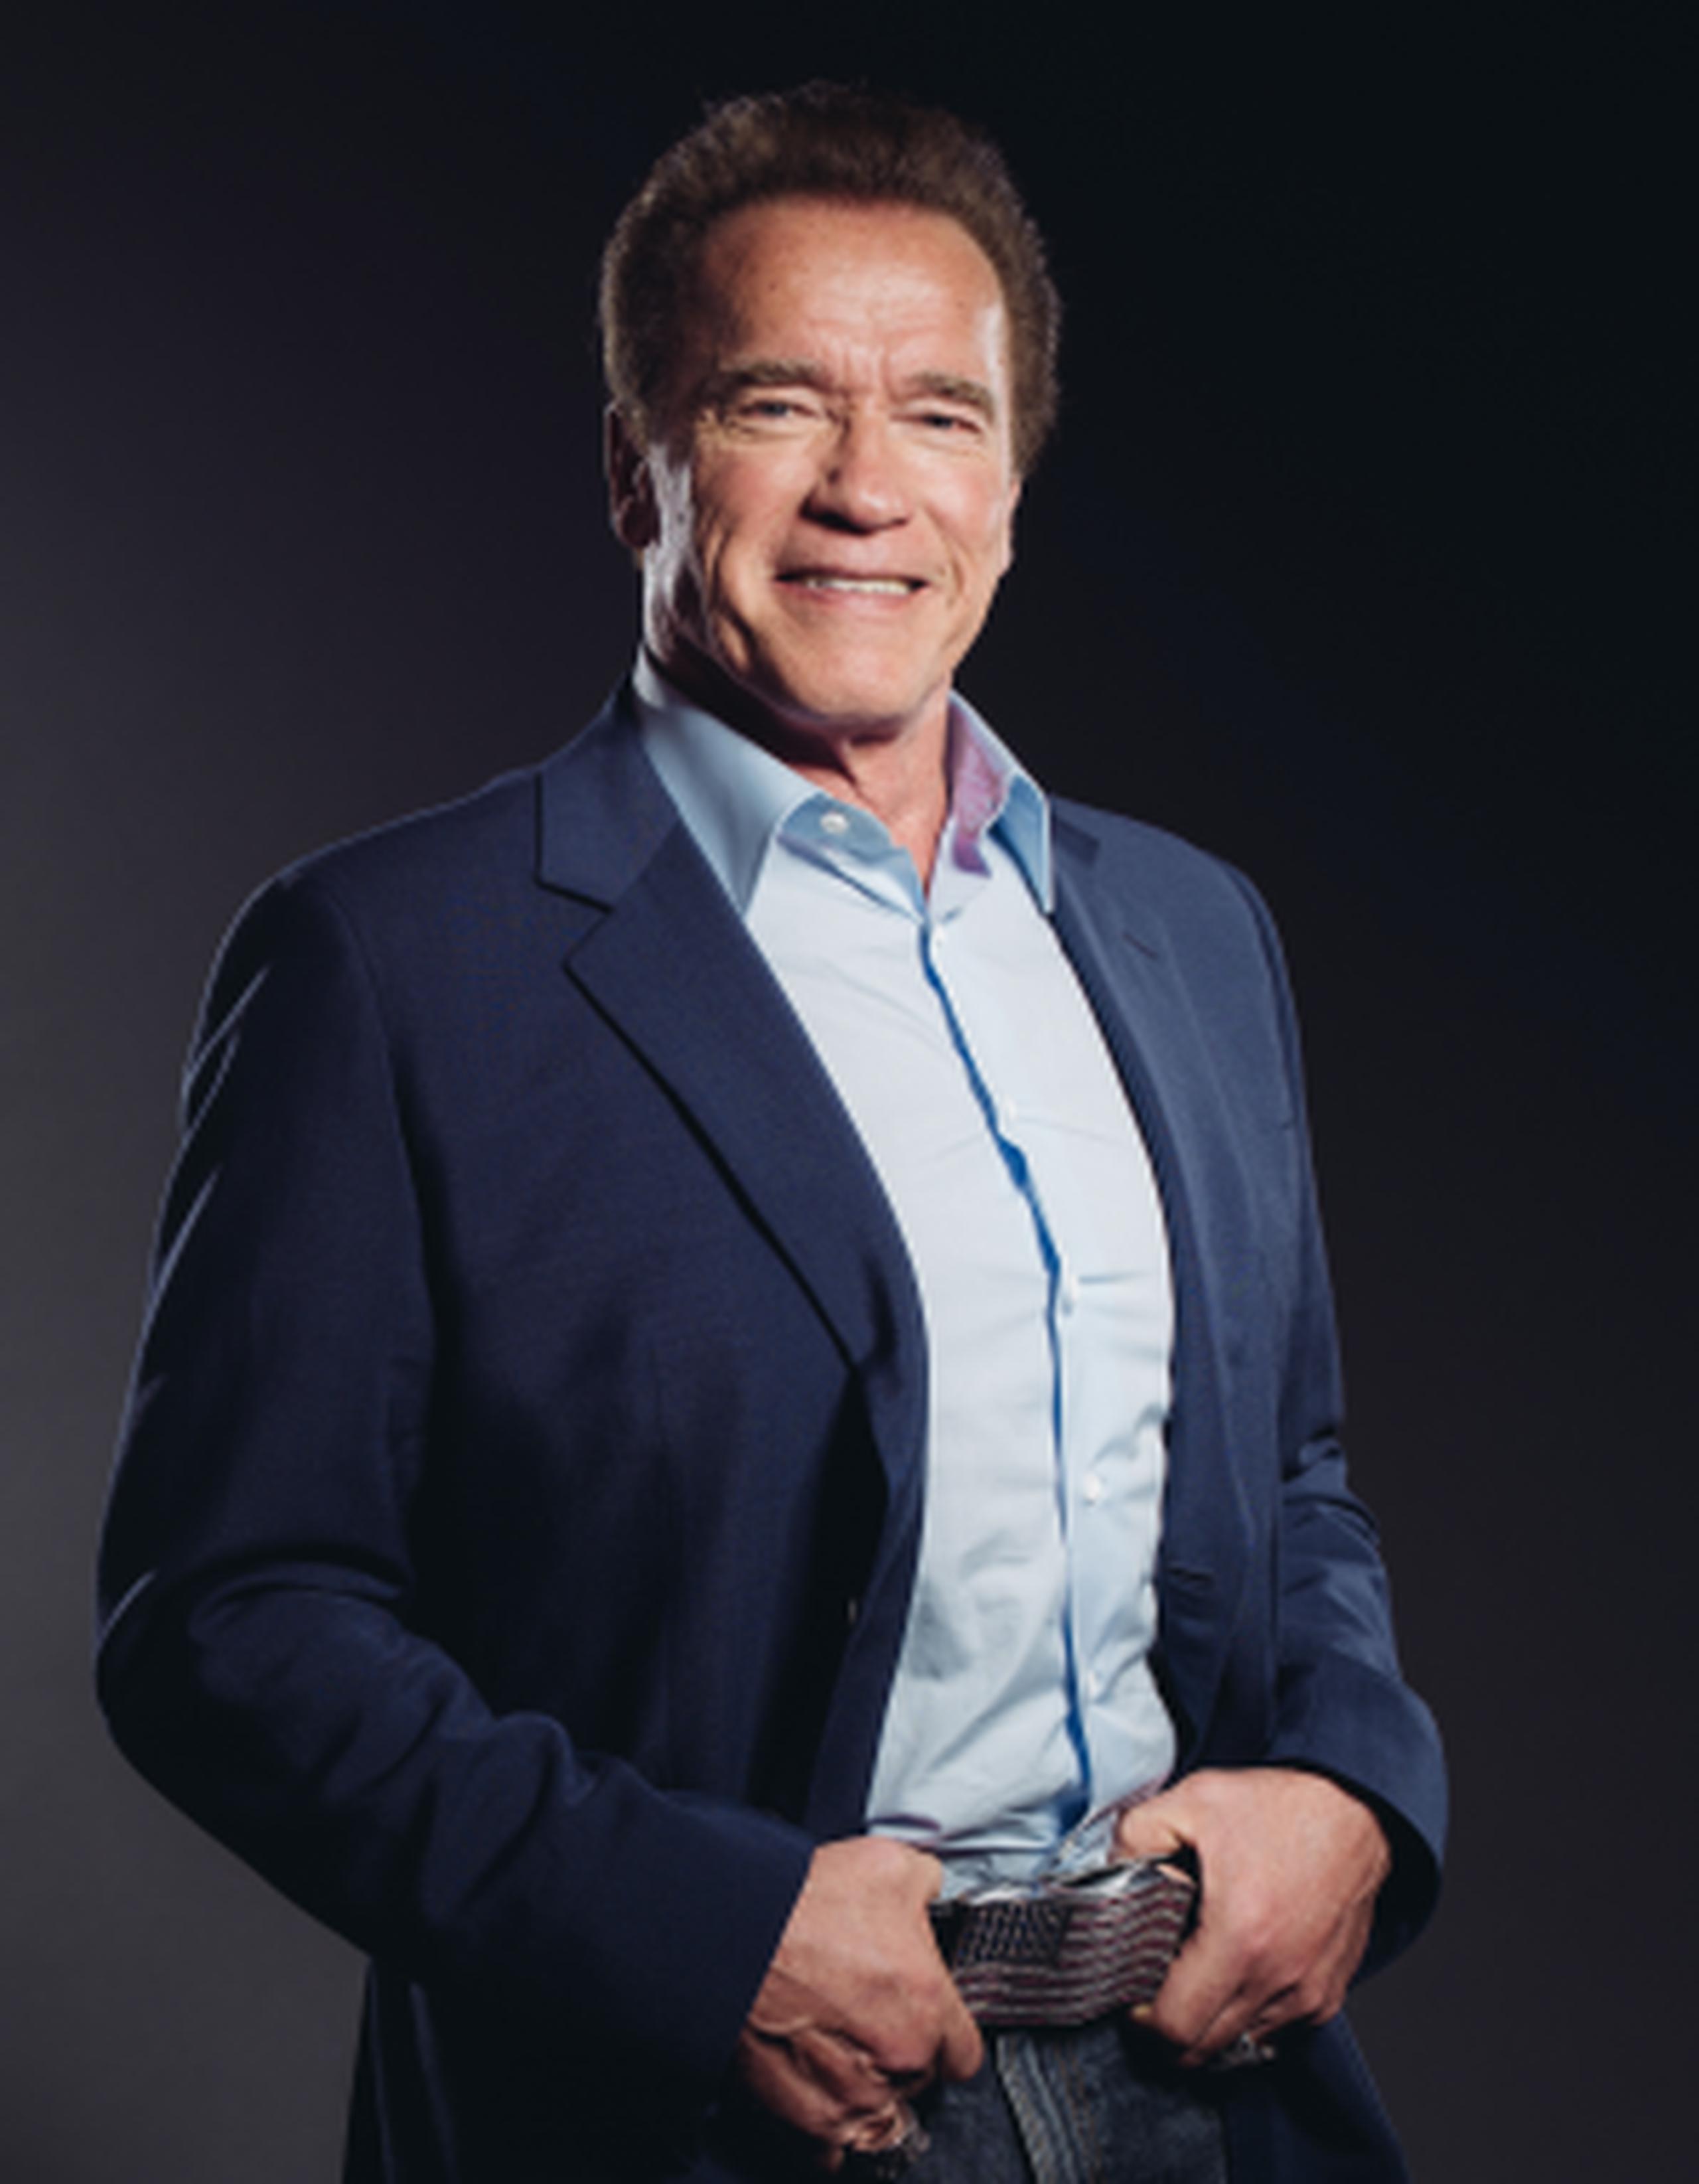 La televisora NBC anunció hoy, lunes, que Schwarzenegger será el nuevo presentador del programa, que regresará a la televisión en el 2016. (AP)